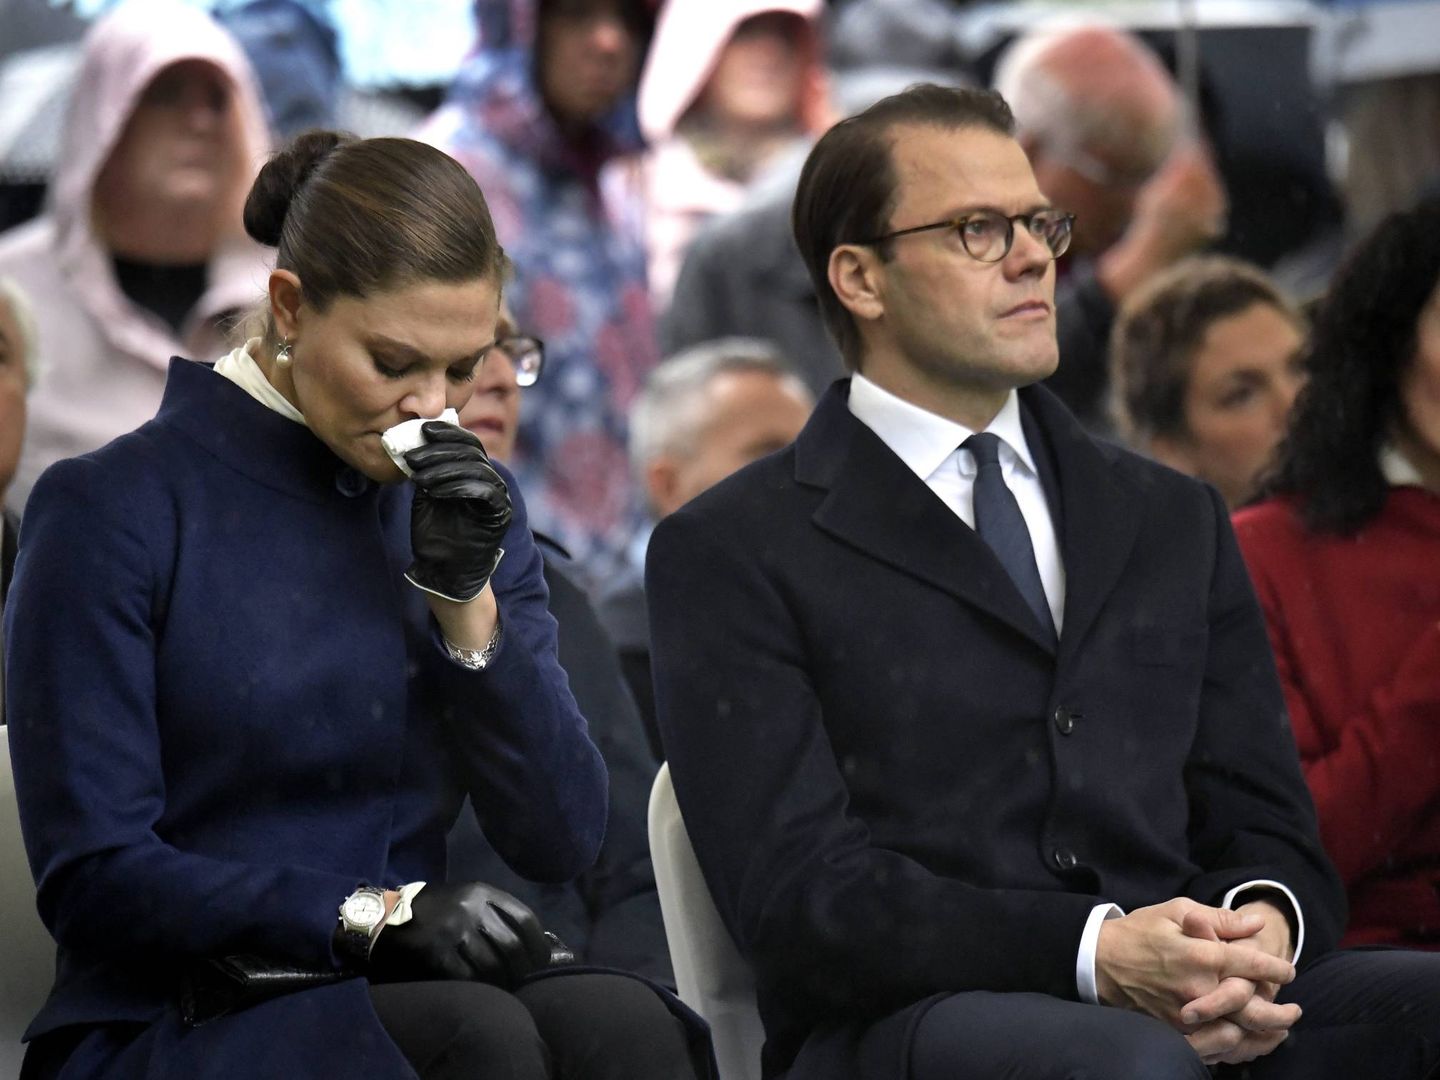 Victoria de Suecia, junto a su marido, el príncipe Daniel, sin poder contener las lágrimas. (Cordon Press)